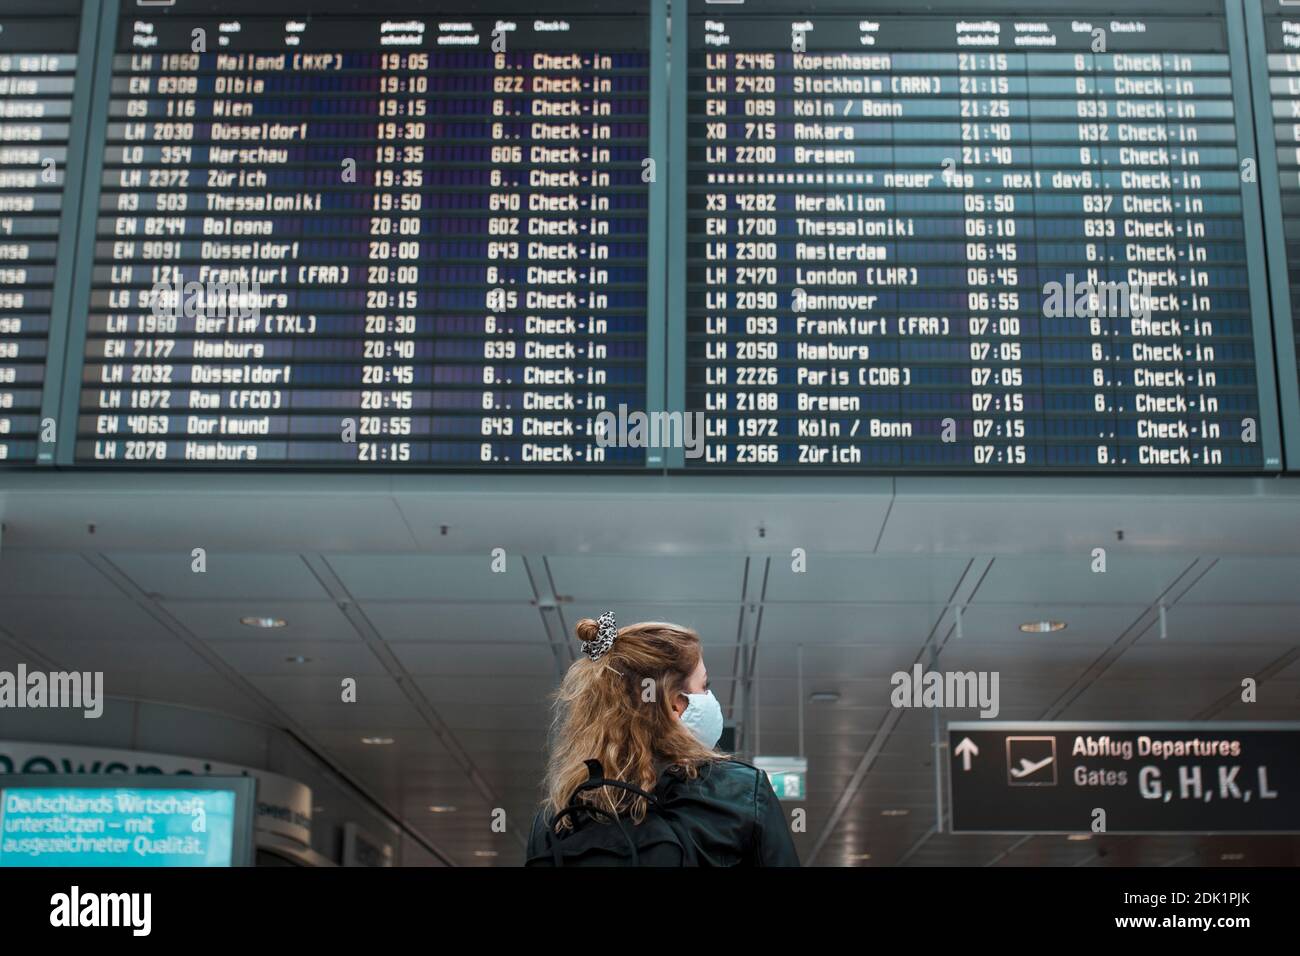 Junge blonde Frau am Flughafen München mit Mund-Nasen-Maske / Corona-Reise / Fluggast mit Schutzmaske Foto Stock